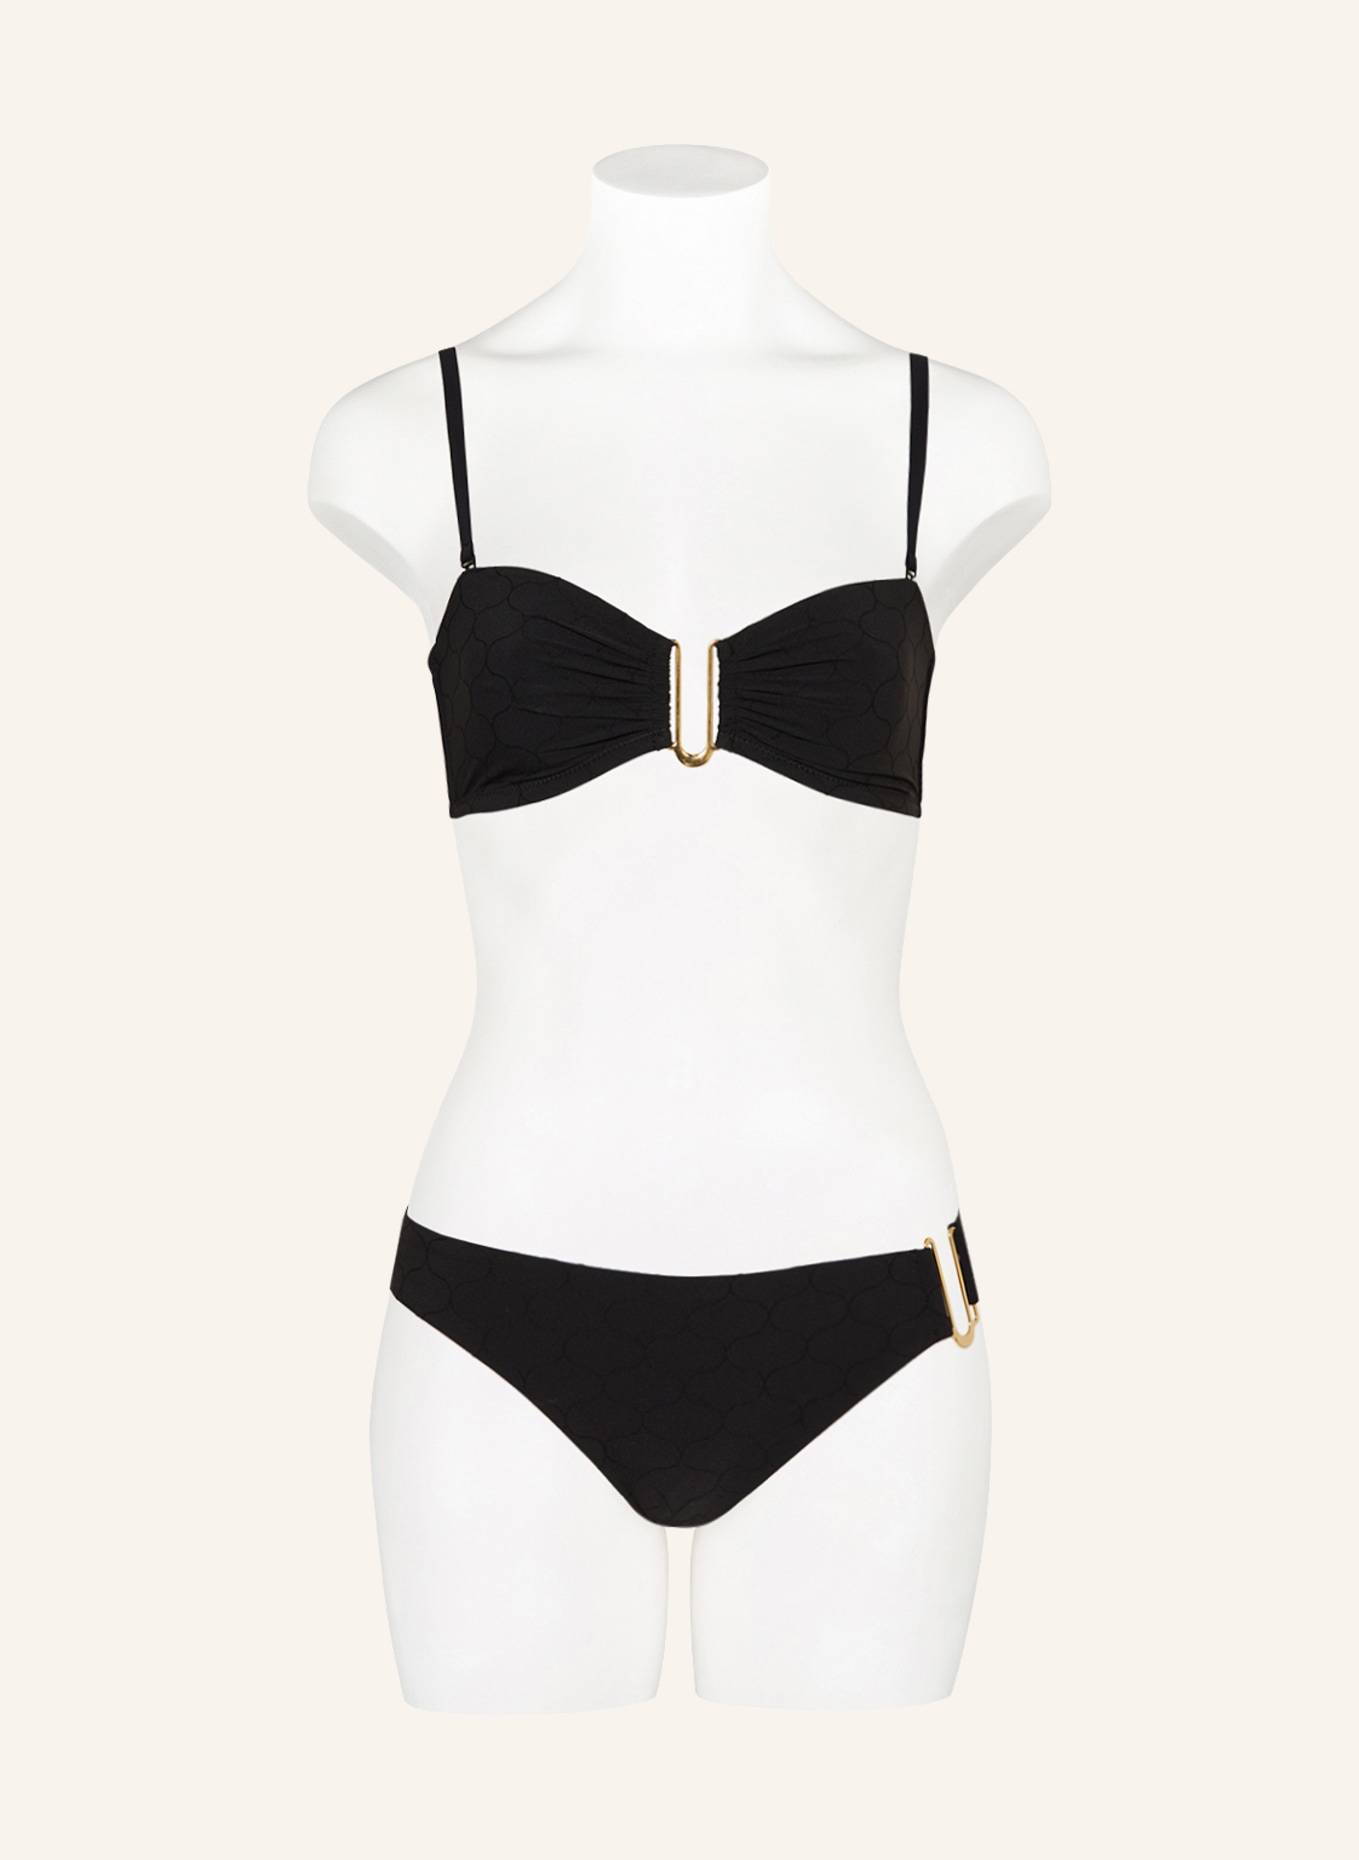 CHANTELLE Bralette-Bikini-Top GLOW, Farbe: SCHWARZ (Bild 2)